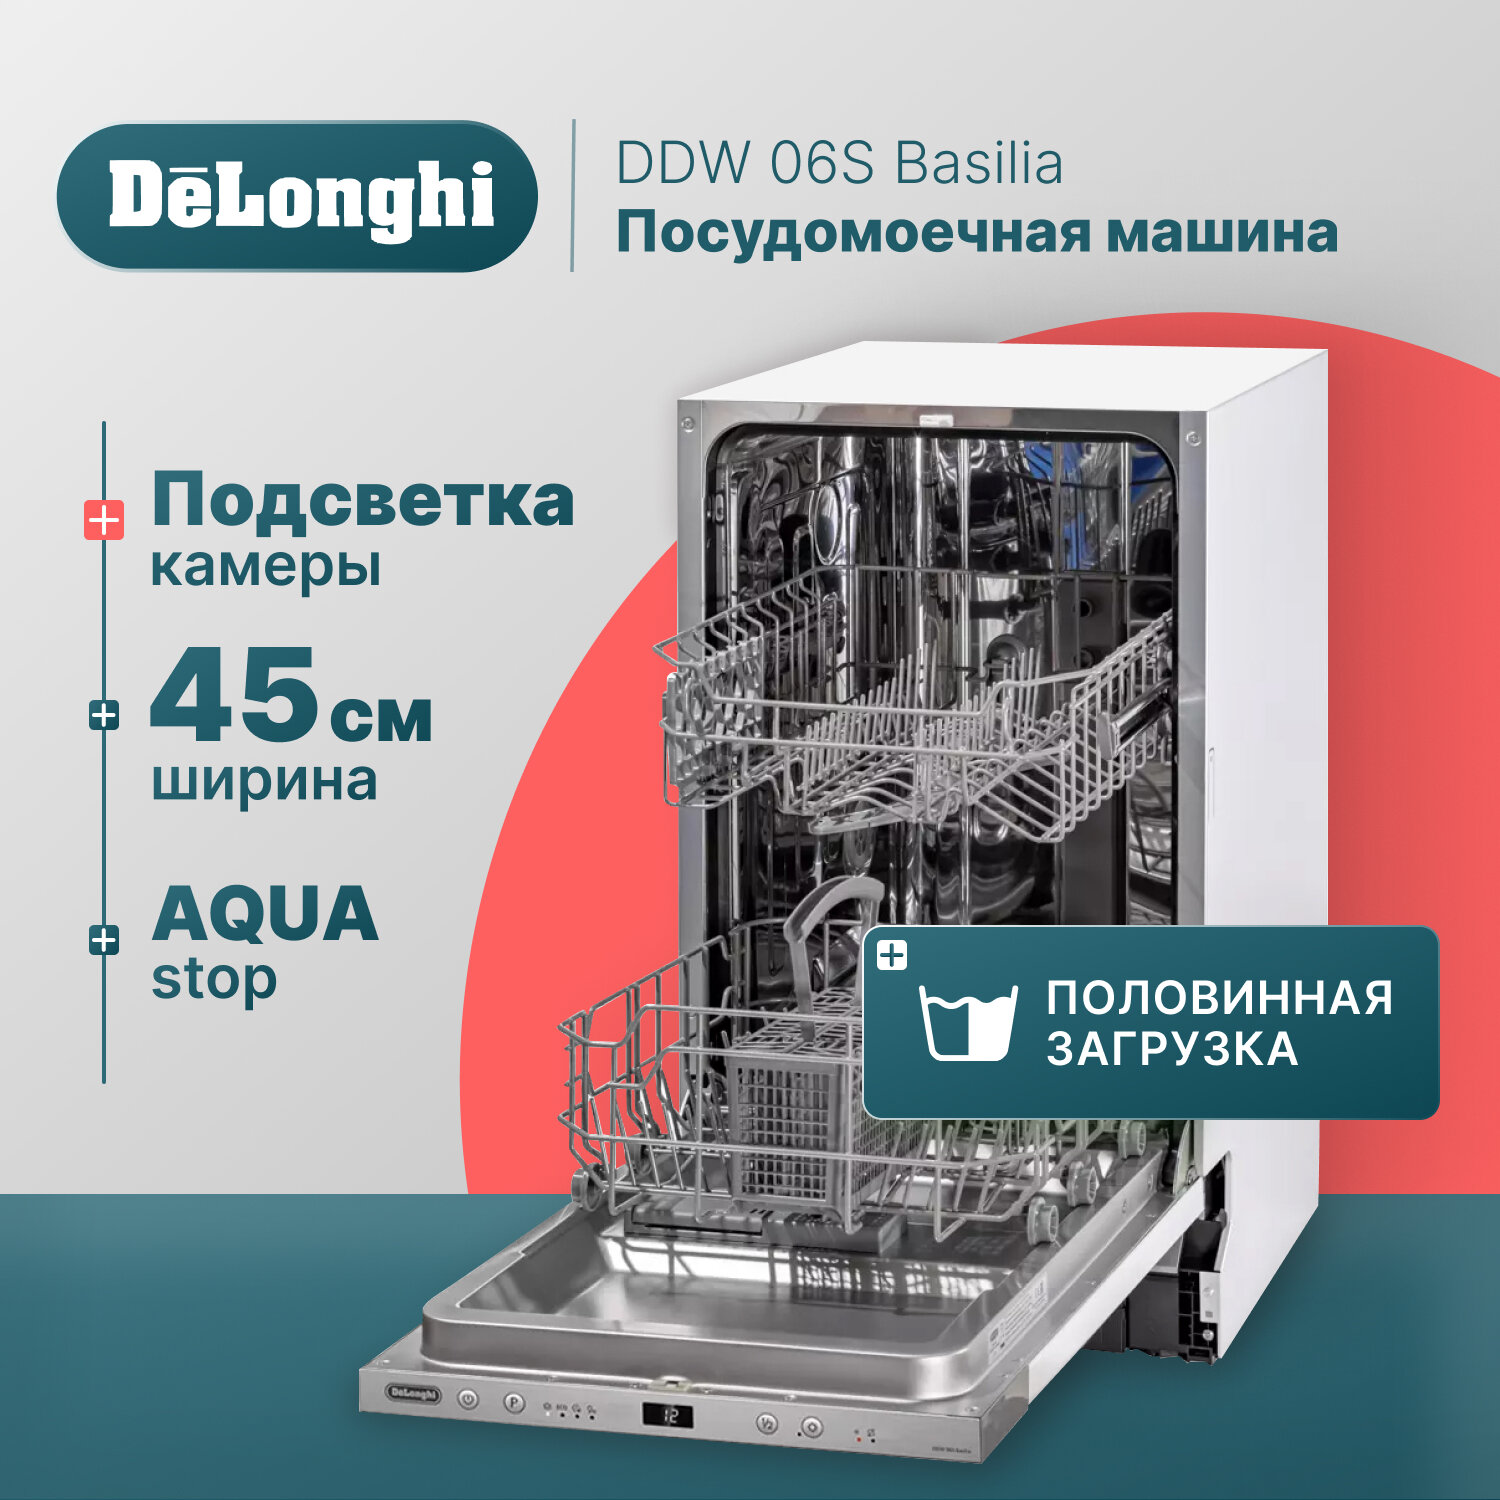 Встраиваемая посудомоечная машина DeLonghi DDW 06S Basilia, 45 см, 9 комплектов, Aqua Stop, внутренняя LED-подсветка, половинная загрузка